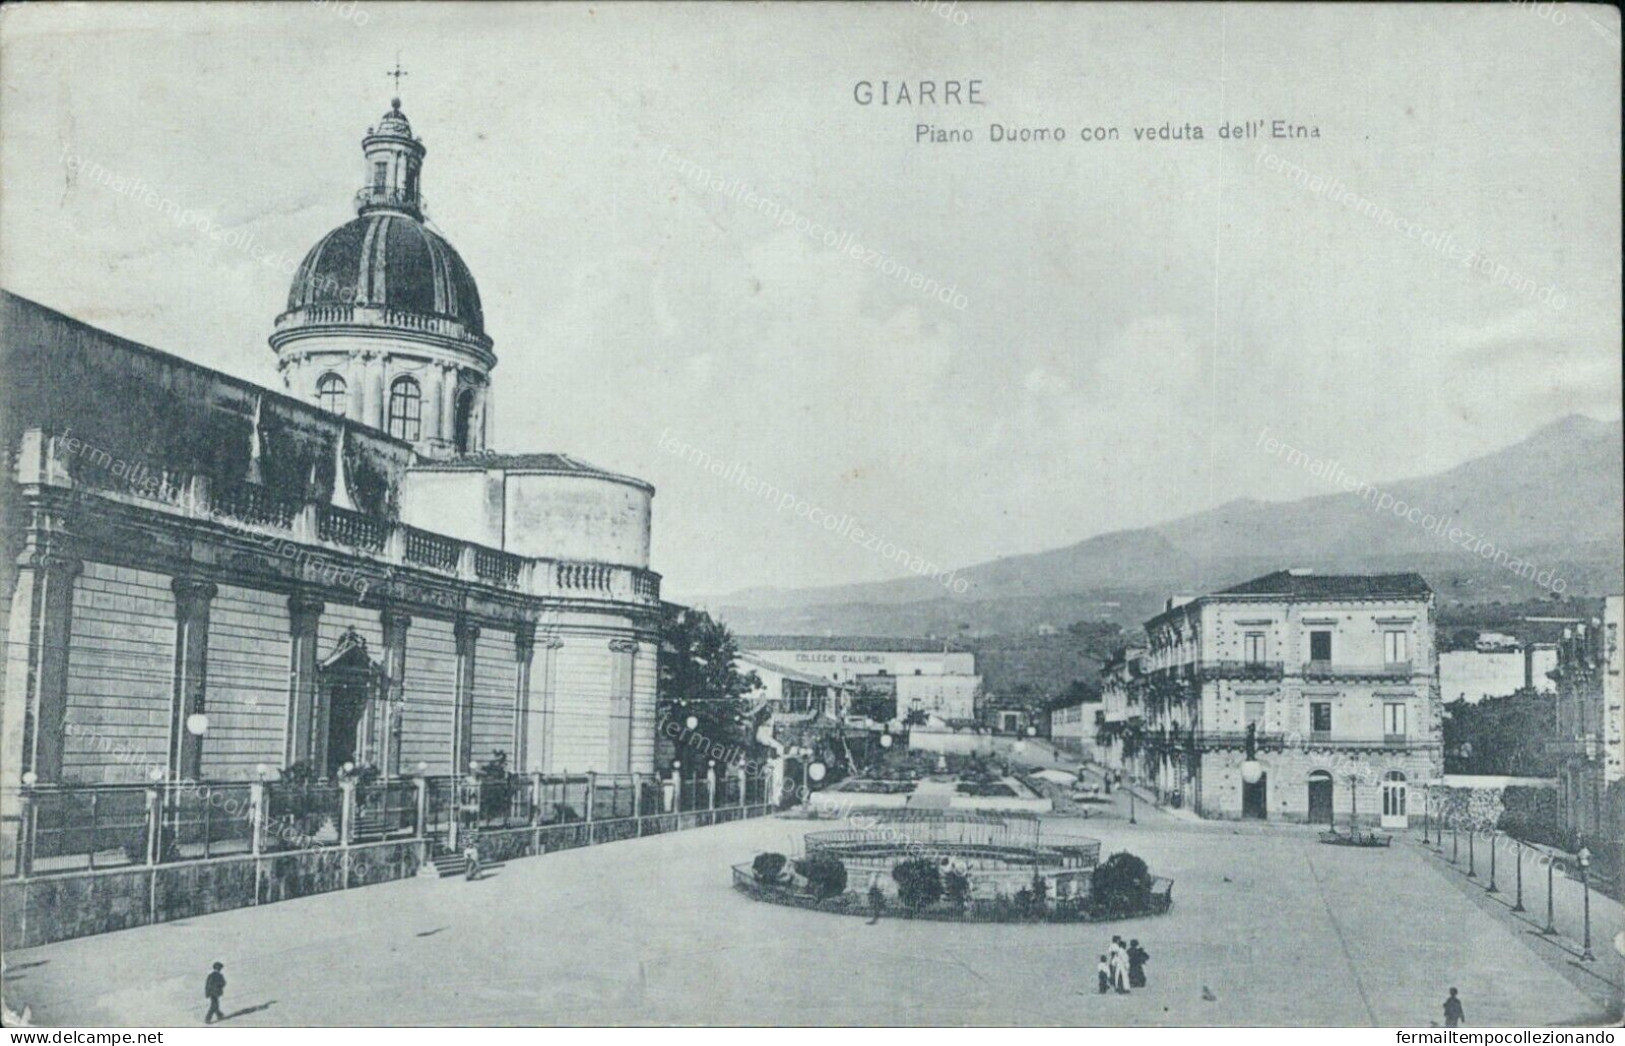 Cs159 Cartolina Giarre Piano Duomo Con Veduta Dell'etna Catania 1910 Sicilia - Catania